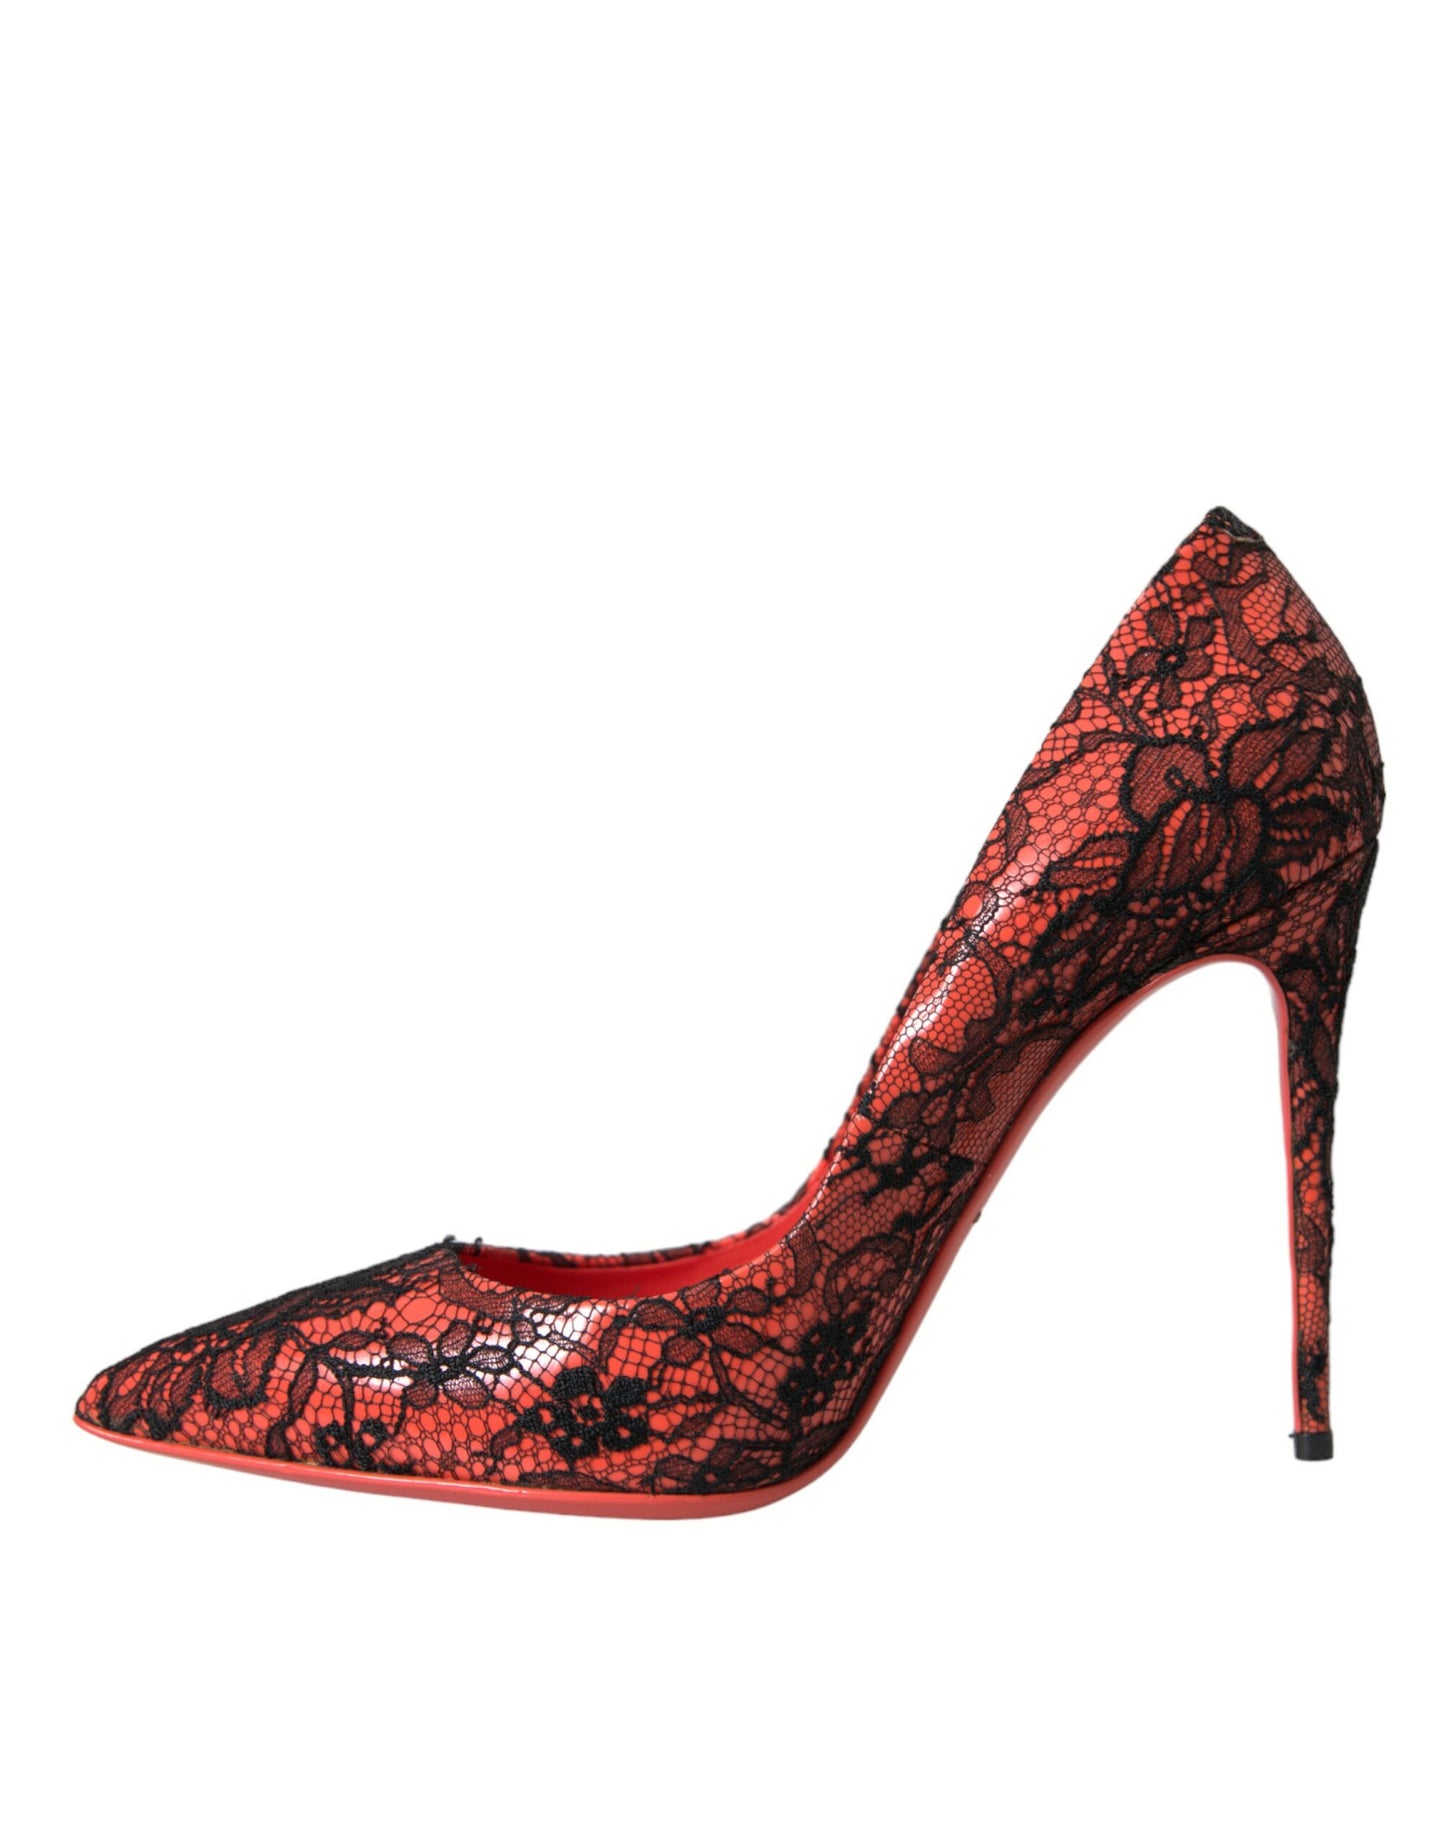 Dolce & Gabbana Orange Black Lace Leather Heels Pumps Shoes